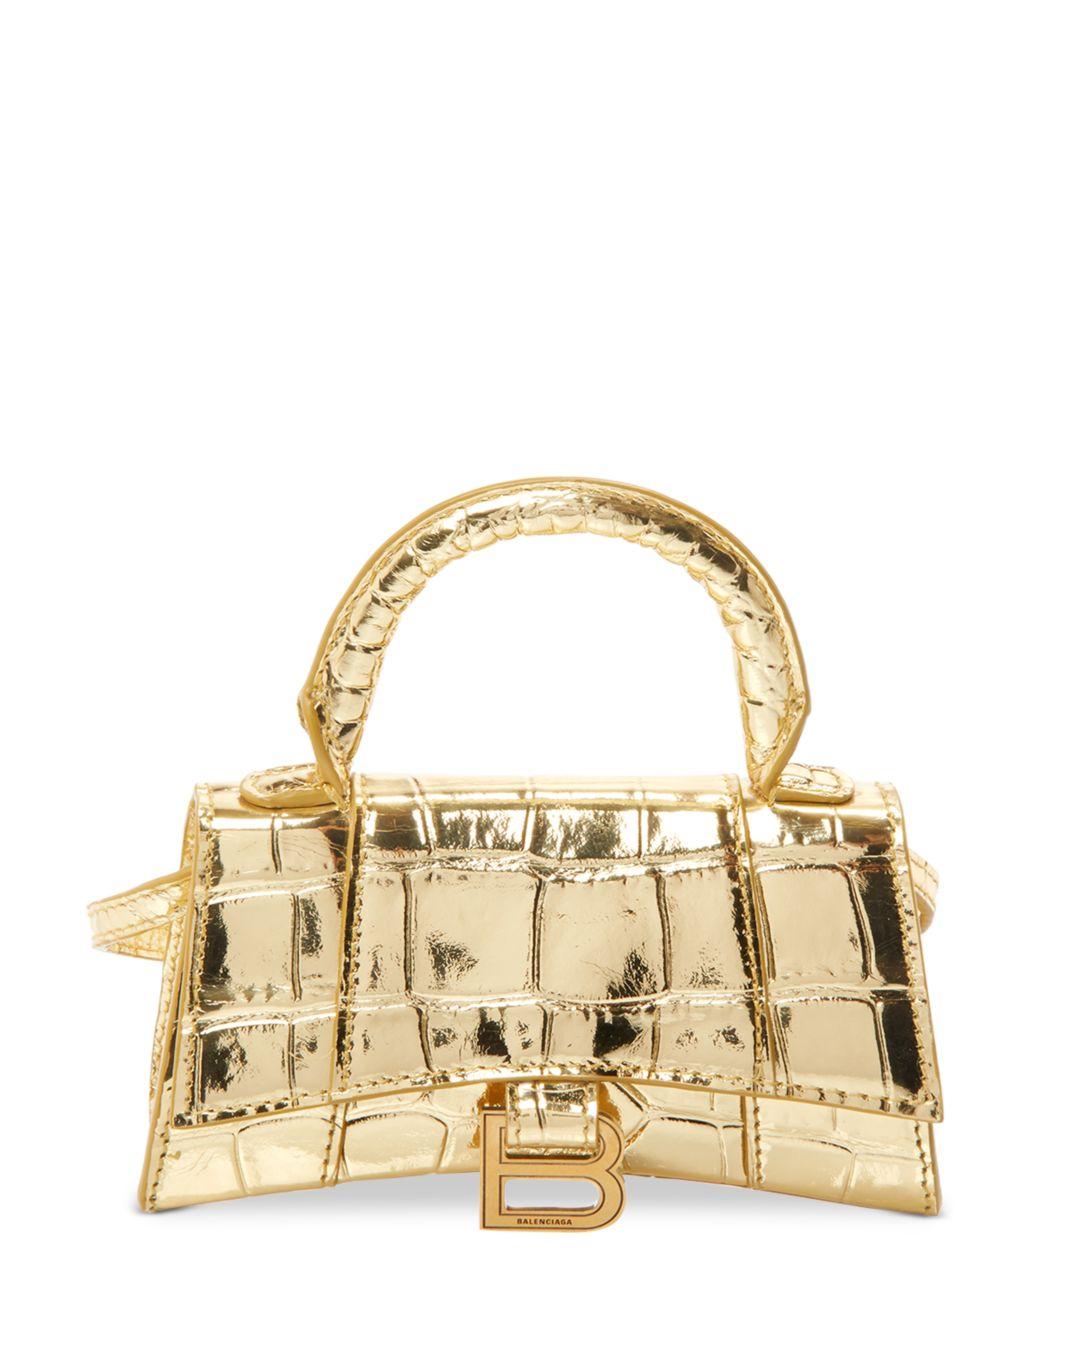 Balenciaga Leather Hourglass Mini Top Handle Bag in Gold (Metallic) - Lyst